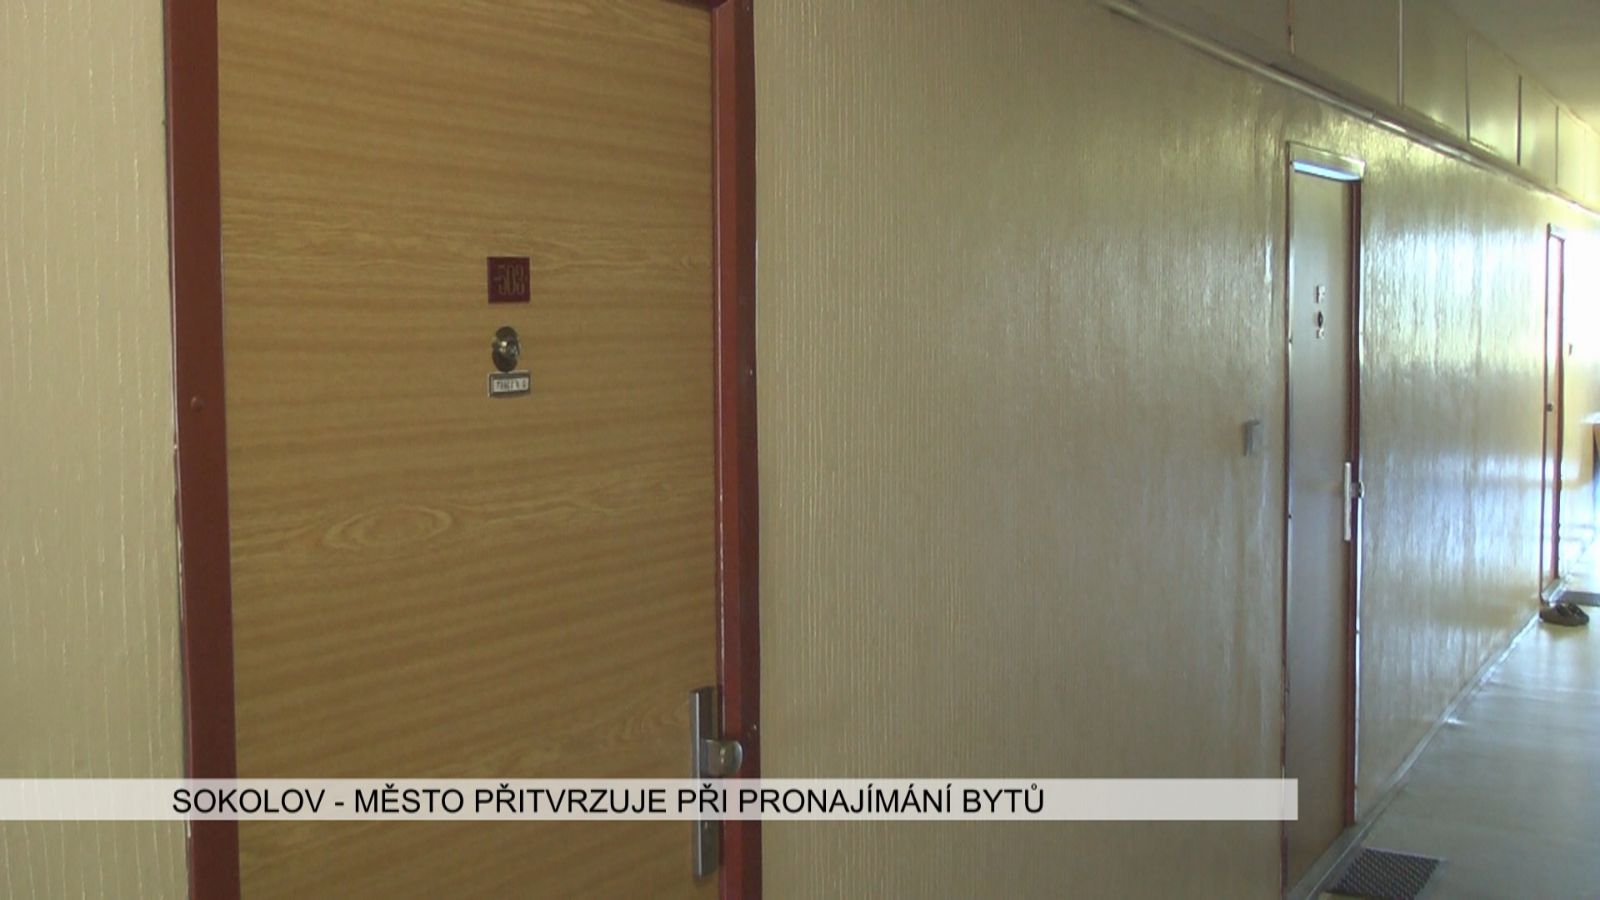 Sokolov: Město přitvrzuje při pronajímání bytů (TV Západ)